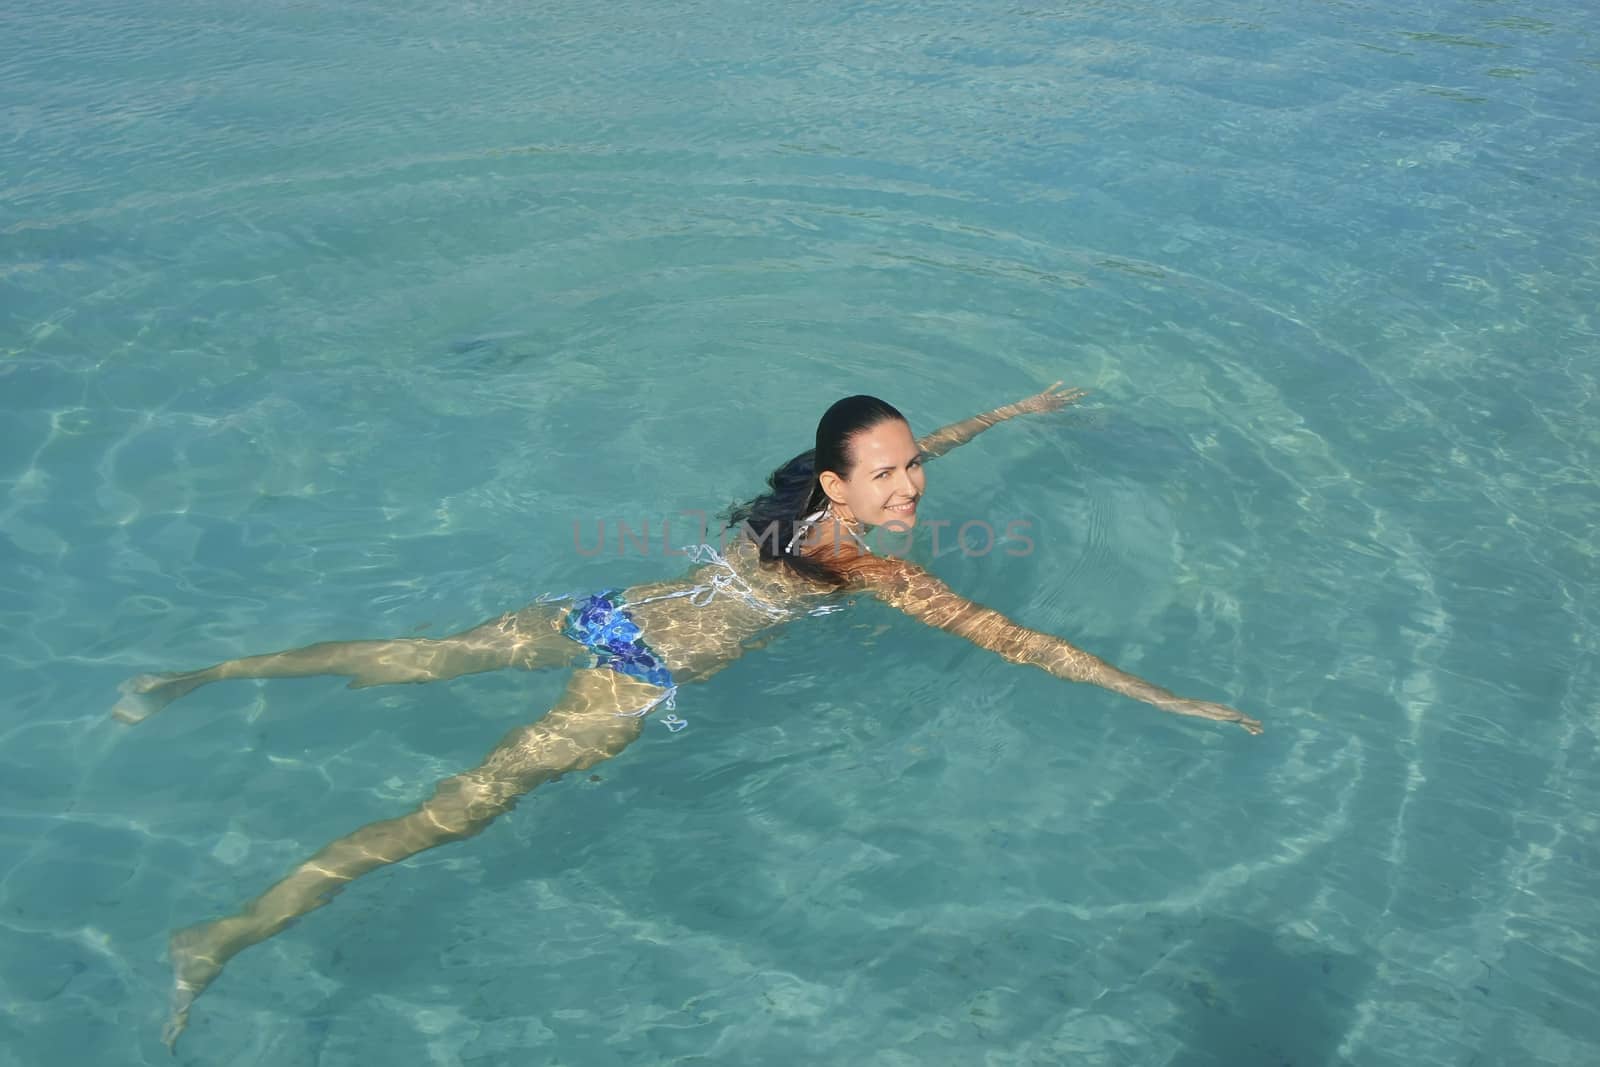 Young woman in bikini swimming in clear water